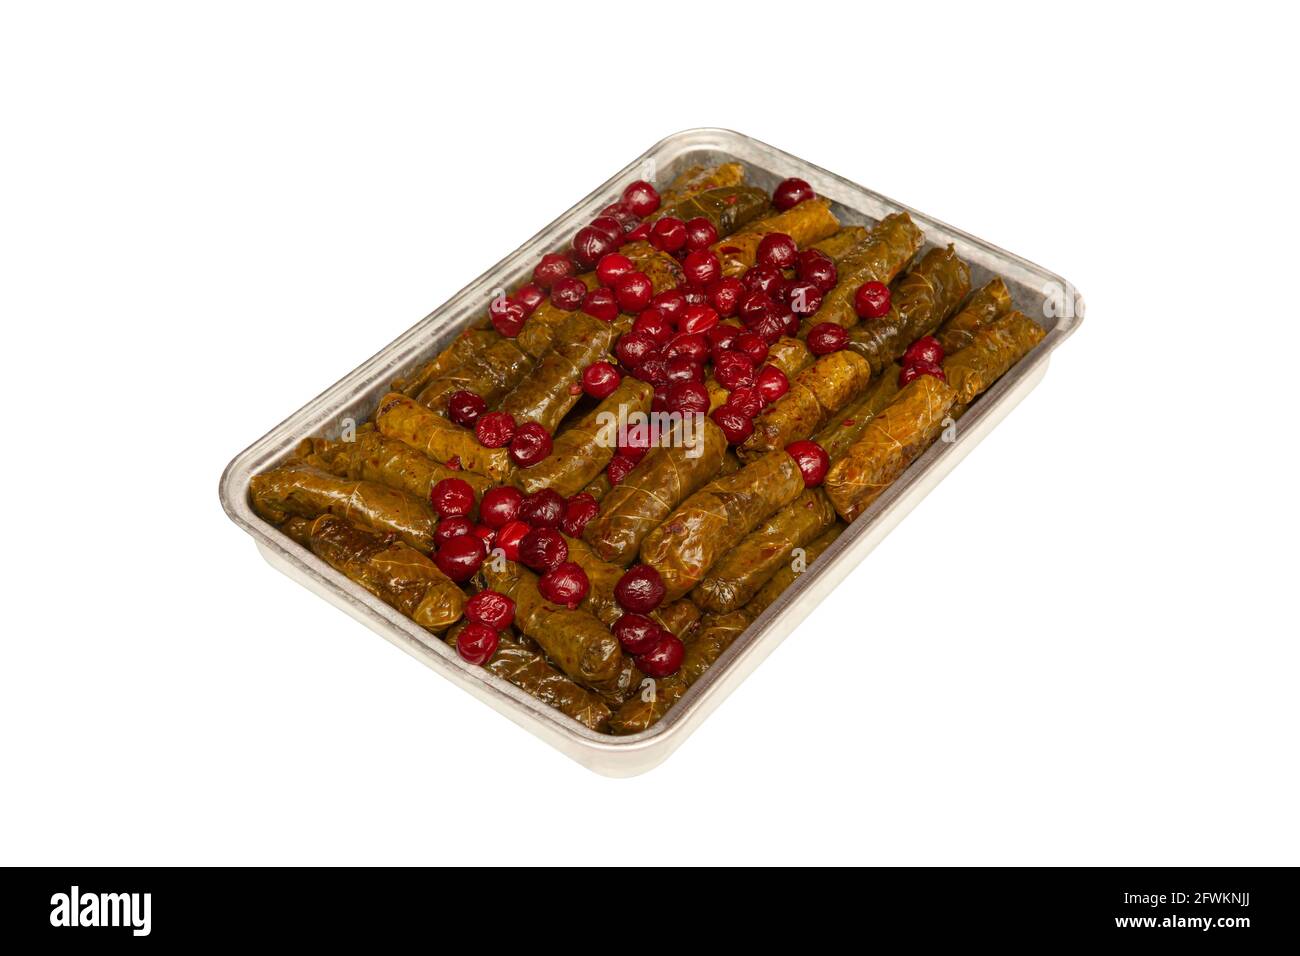 Feuilles de vigne farcies à l'huile d'olive et à la cerise. Meze turque traditionnelle yabrak sarma Banque D'Images